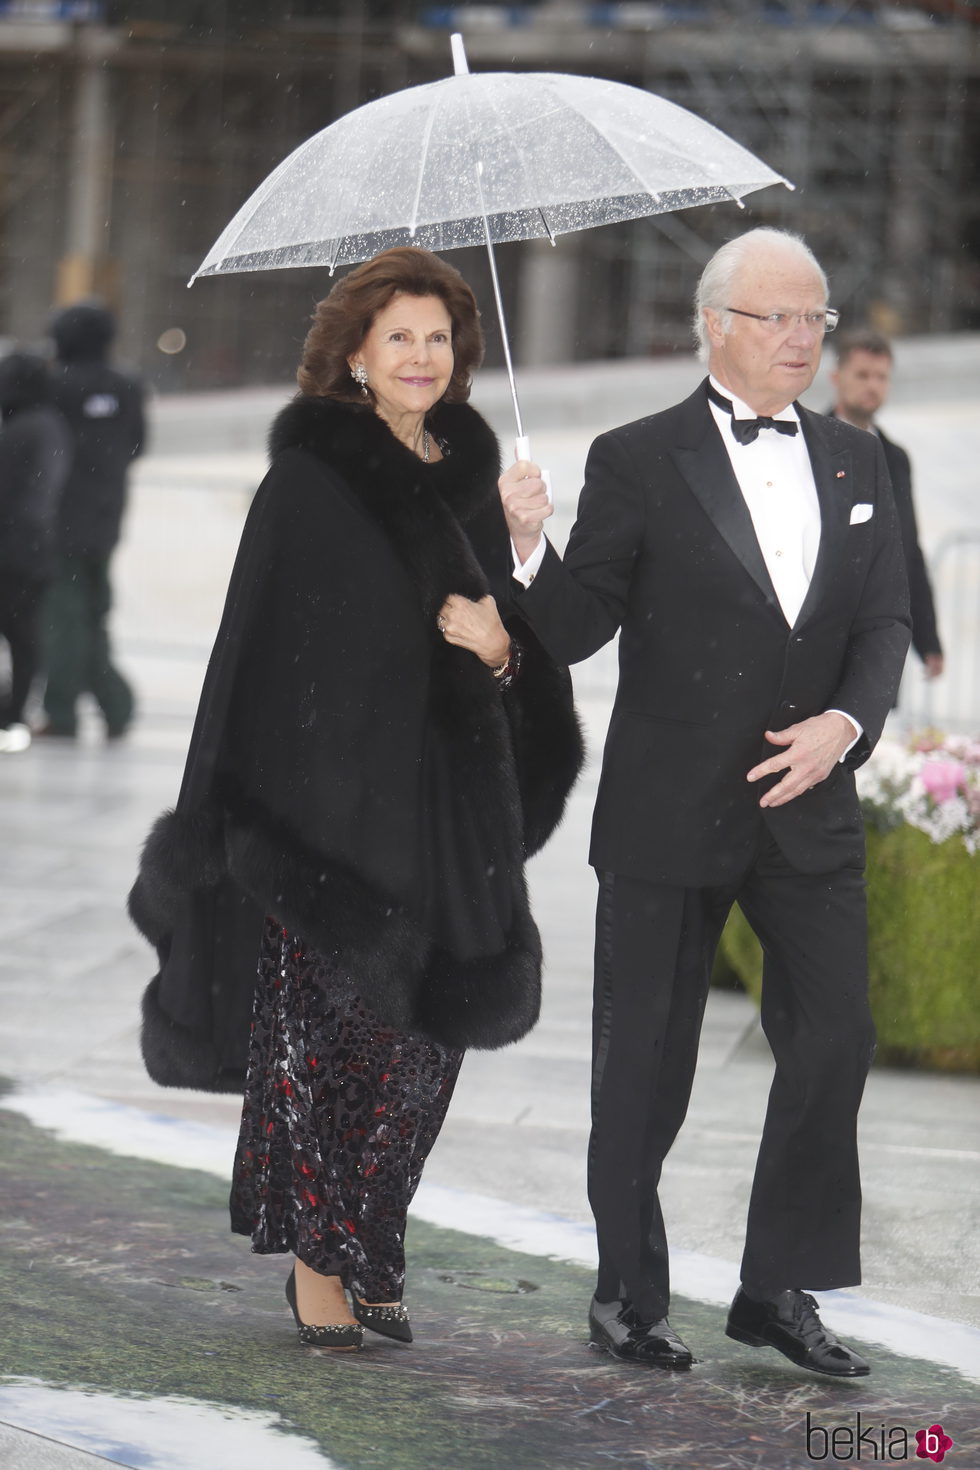 Carlos Gustavo y Silvia de Suecia en la cena en honor a los Reyes de Noruega por su 80 cumpleaños